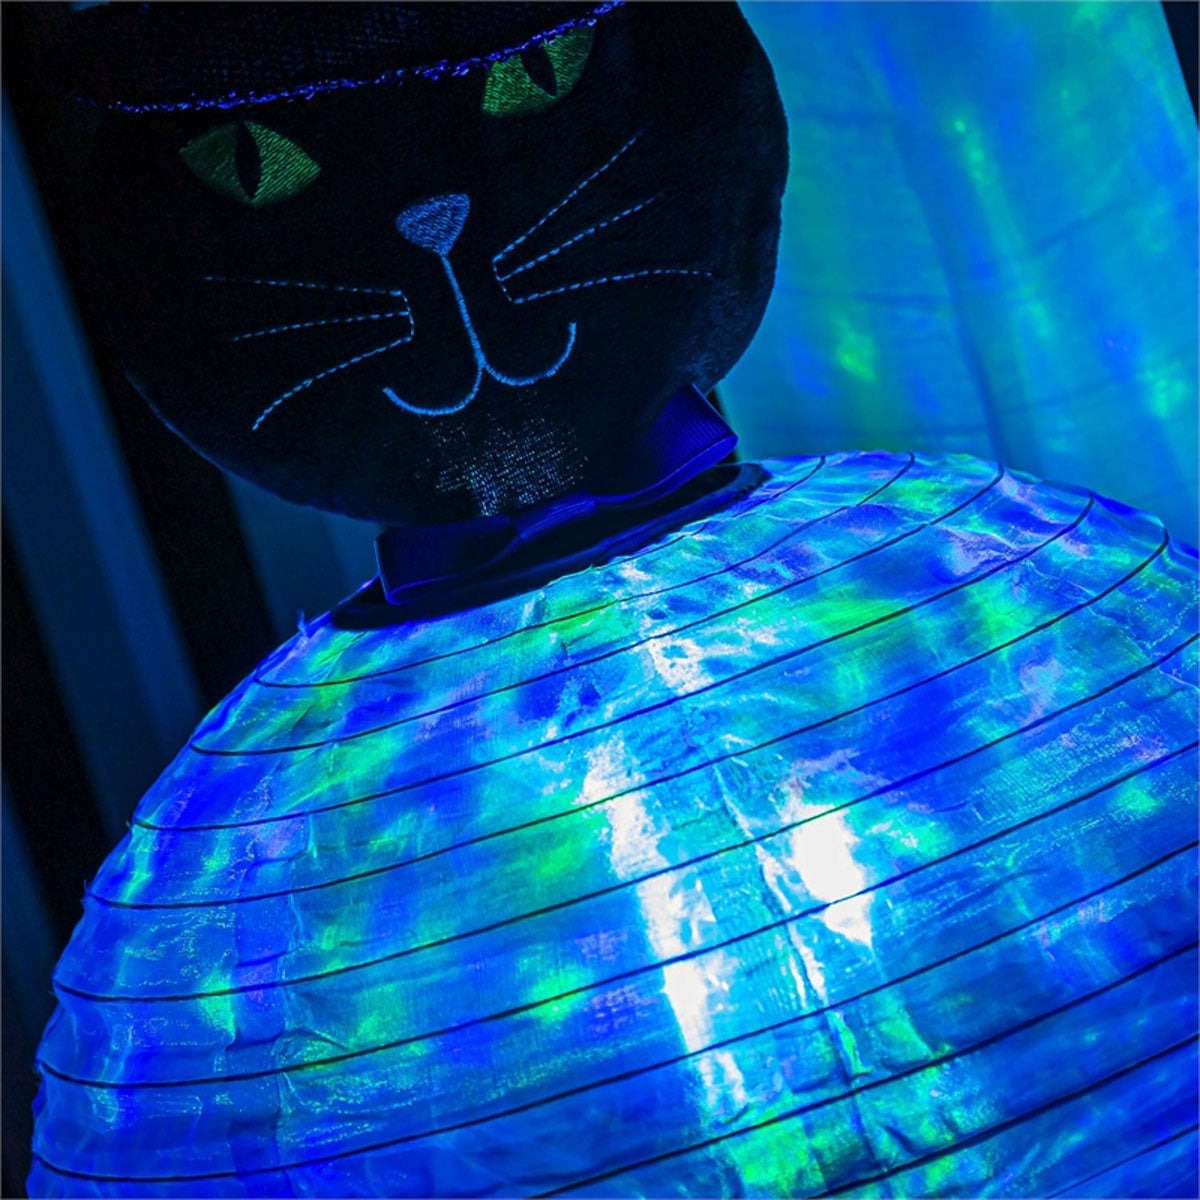 Beaming Buddies Lantern Black Cat